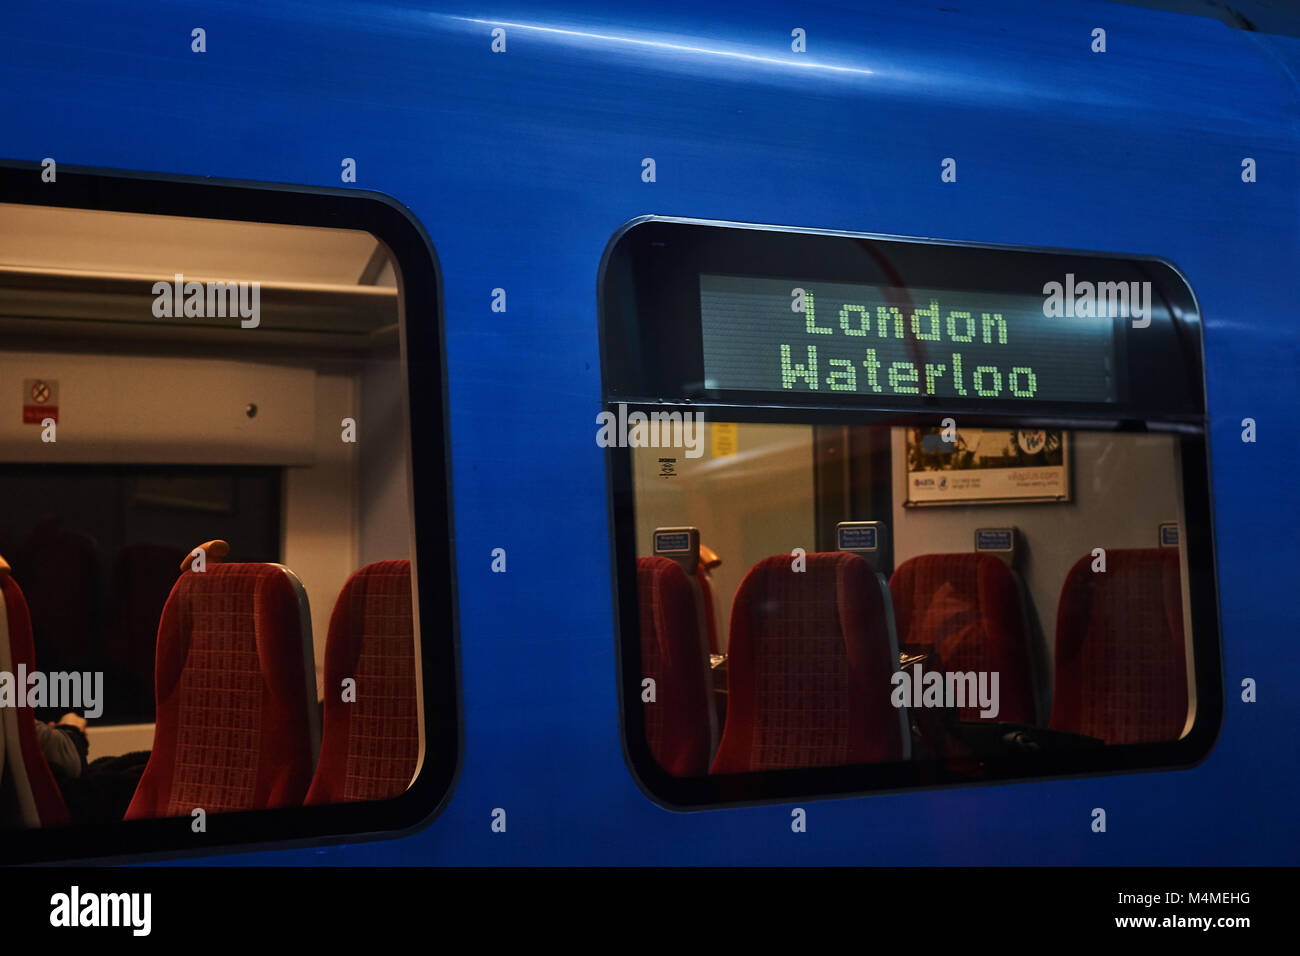 A sud della linea ferroviaria blu, con la destinazione di Londra Waterloo mostra sul lato del treno, sedi visibile all'interno del carrello in attesa nella stazione Foto Stock